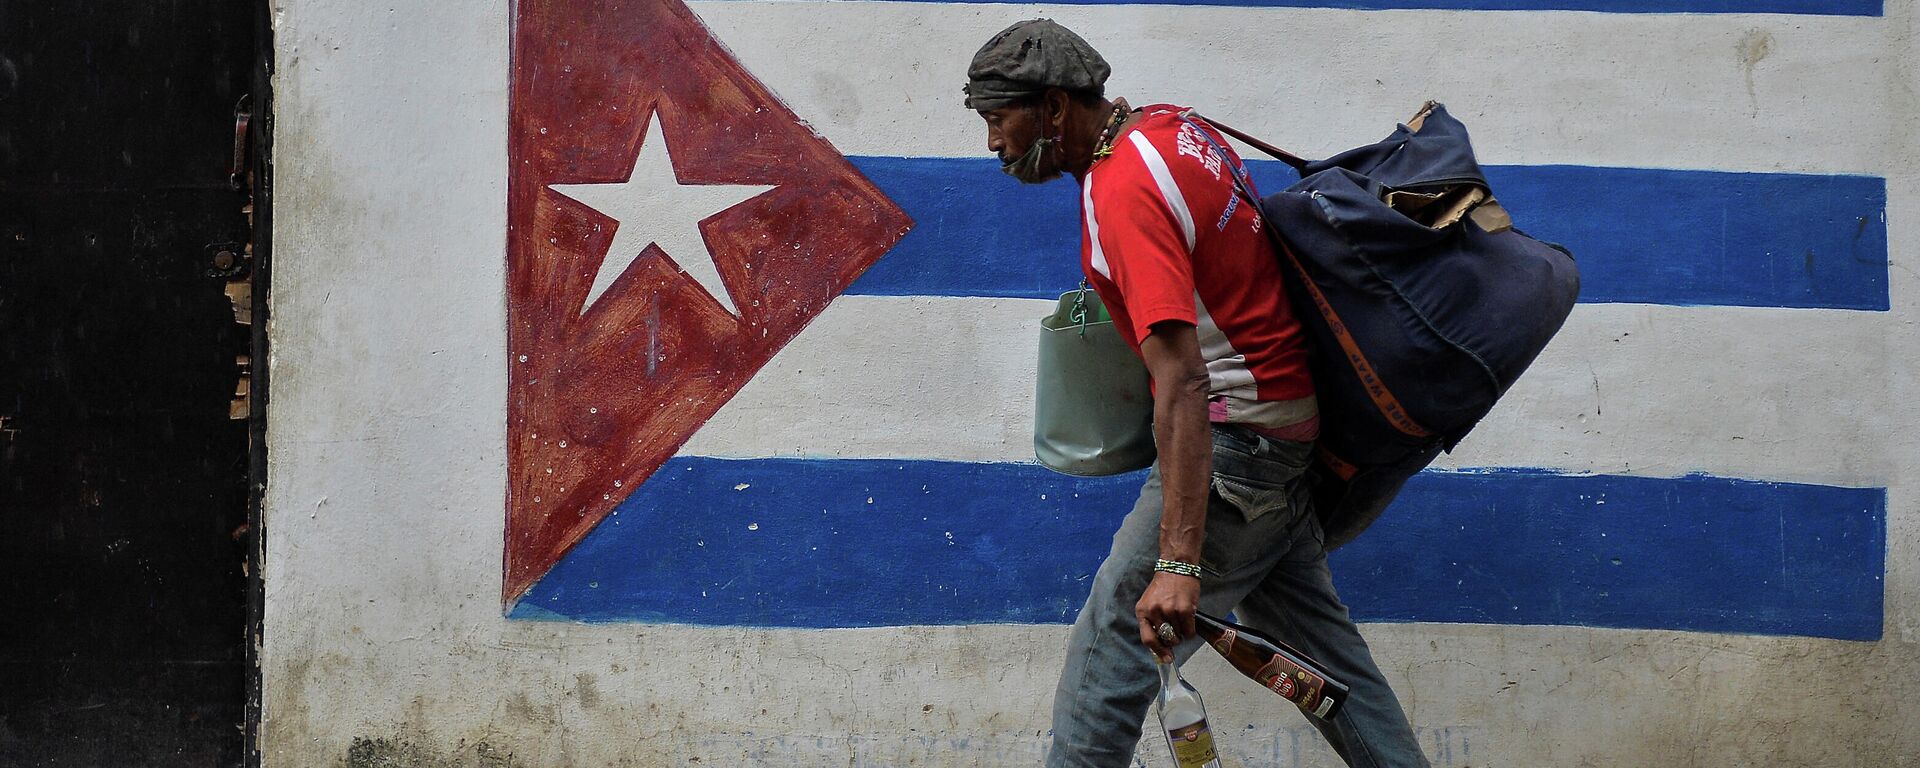 Un hombre caminando en La Habana, Cuba - Sputnik Mundo, 1920, 16.02.2021